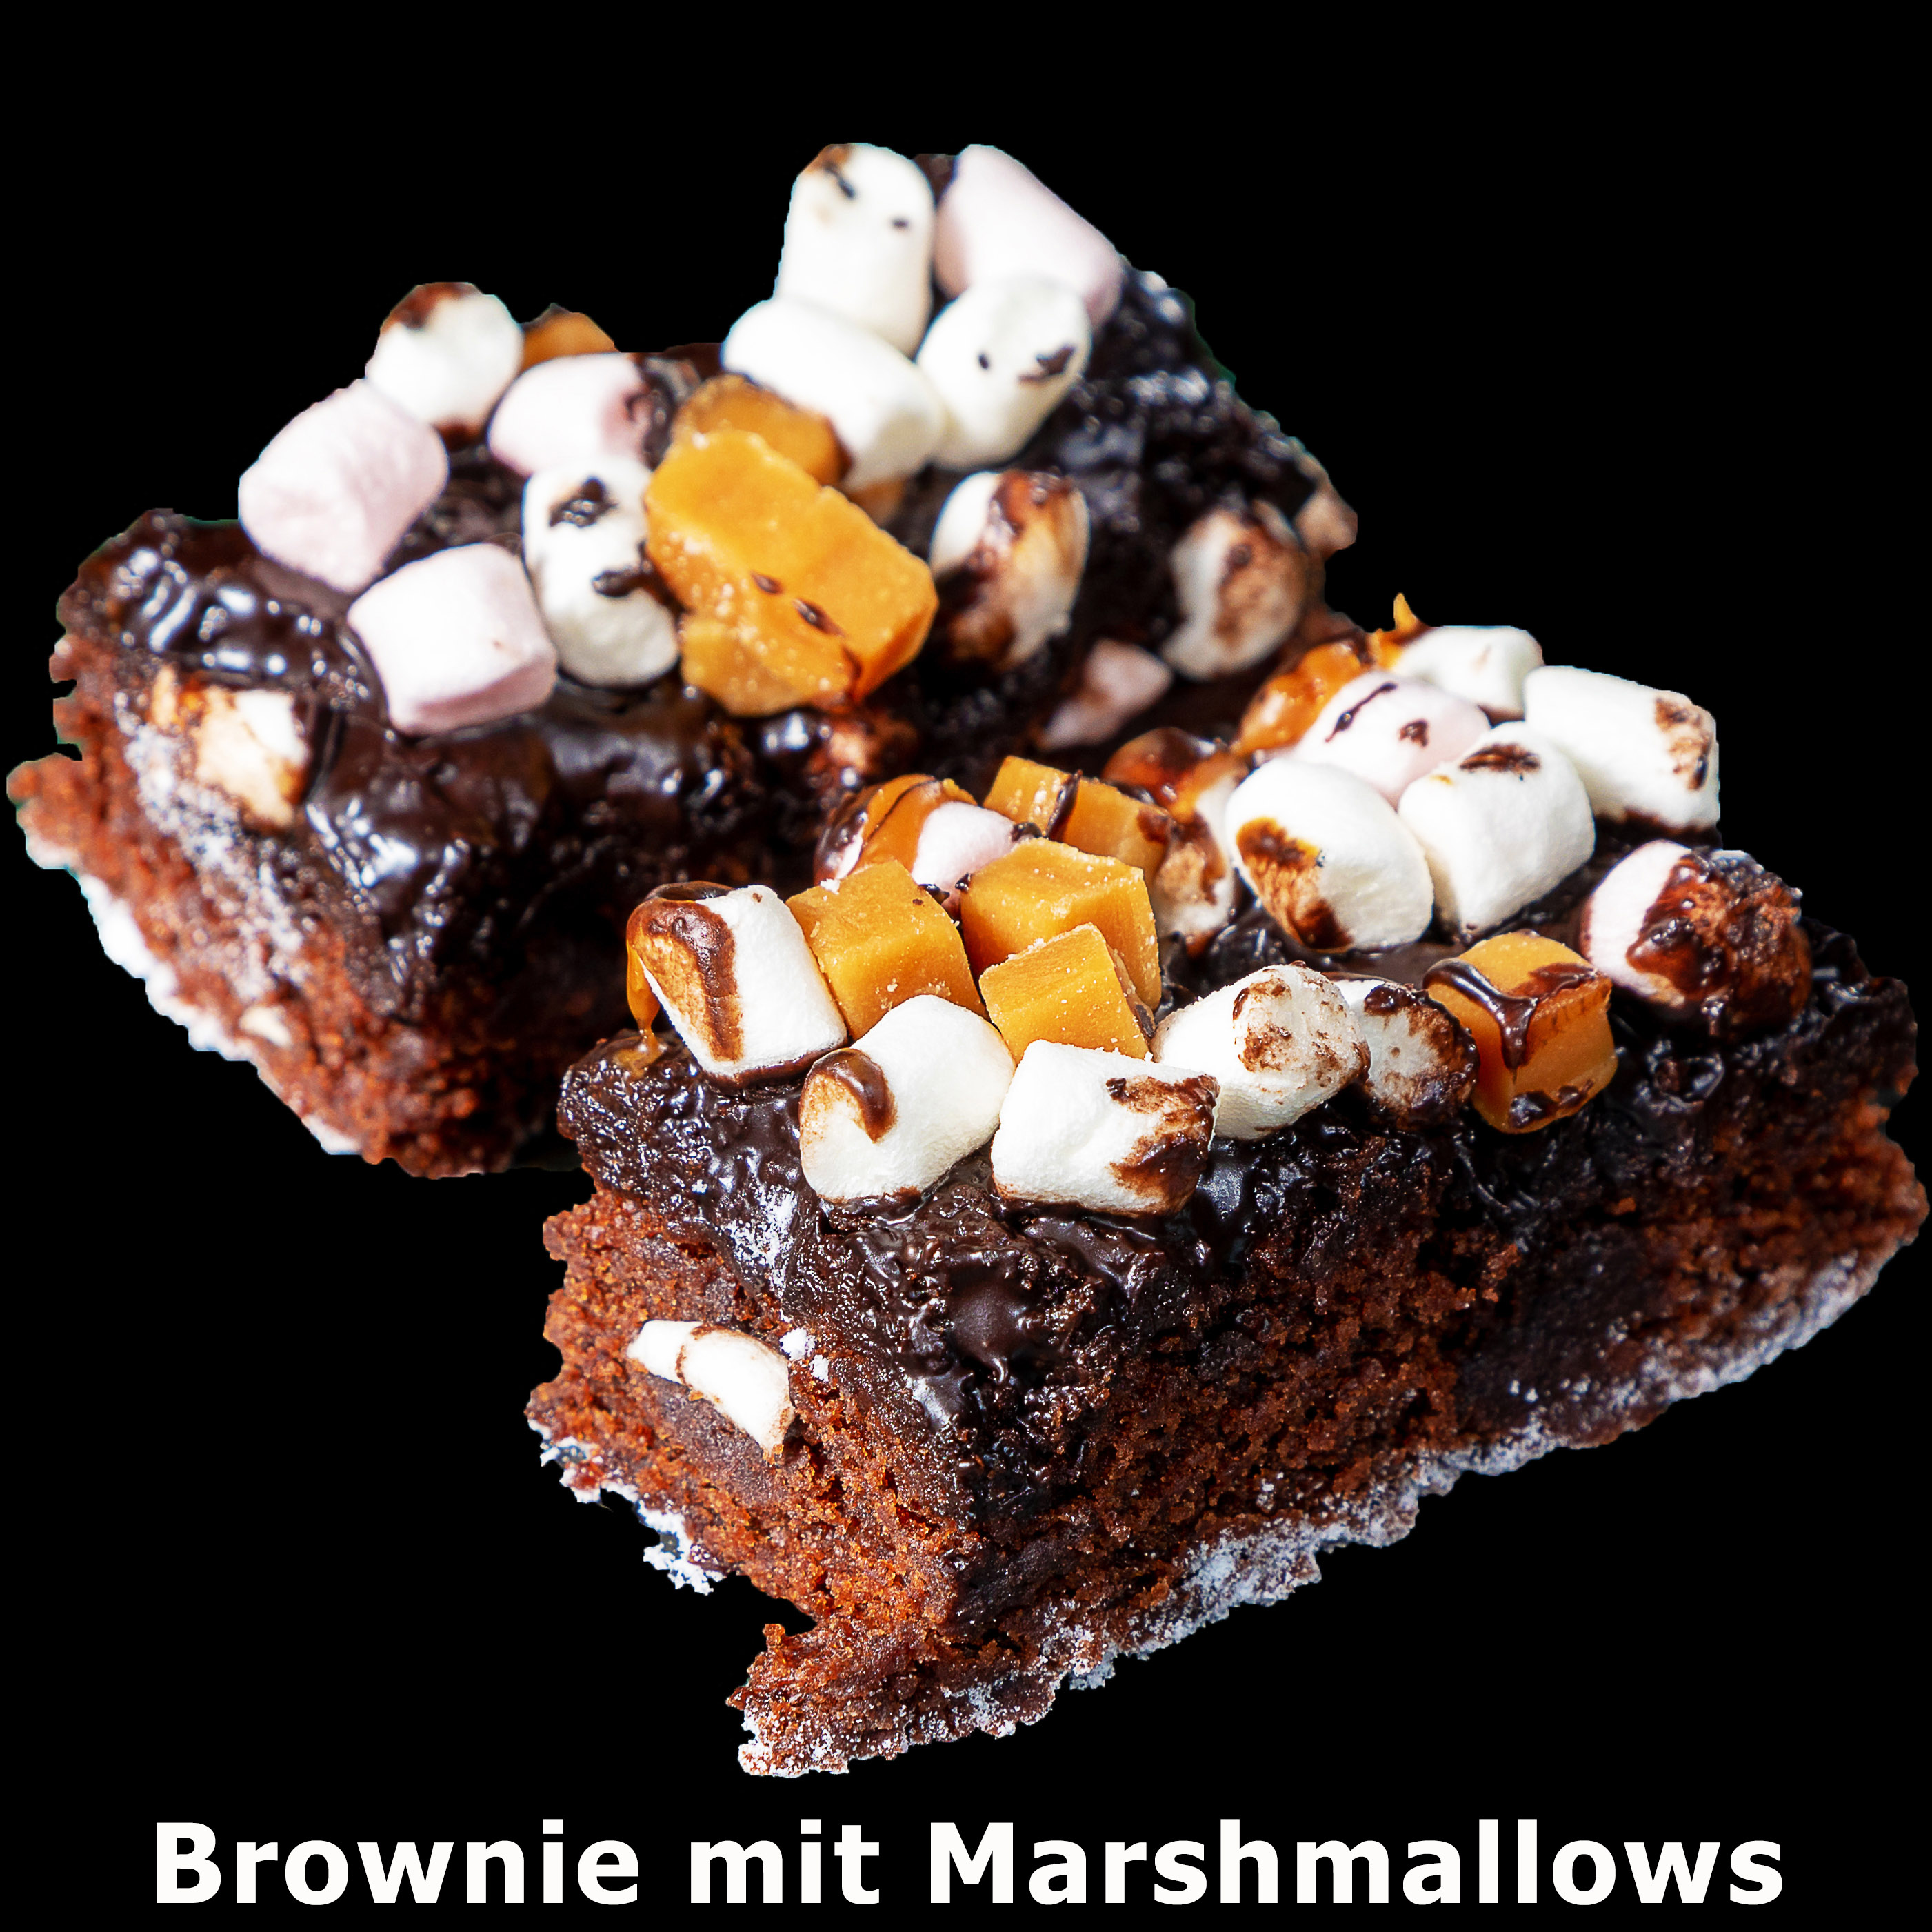 157. Brownie mit Marshmallows